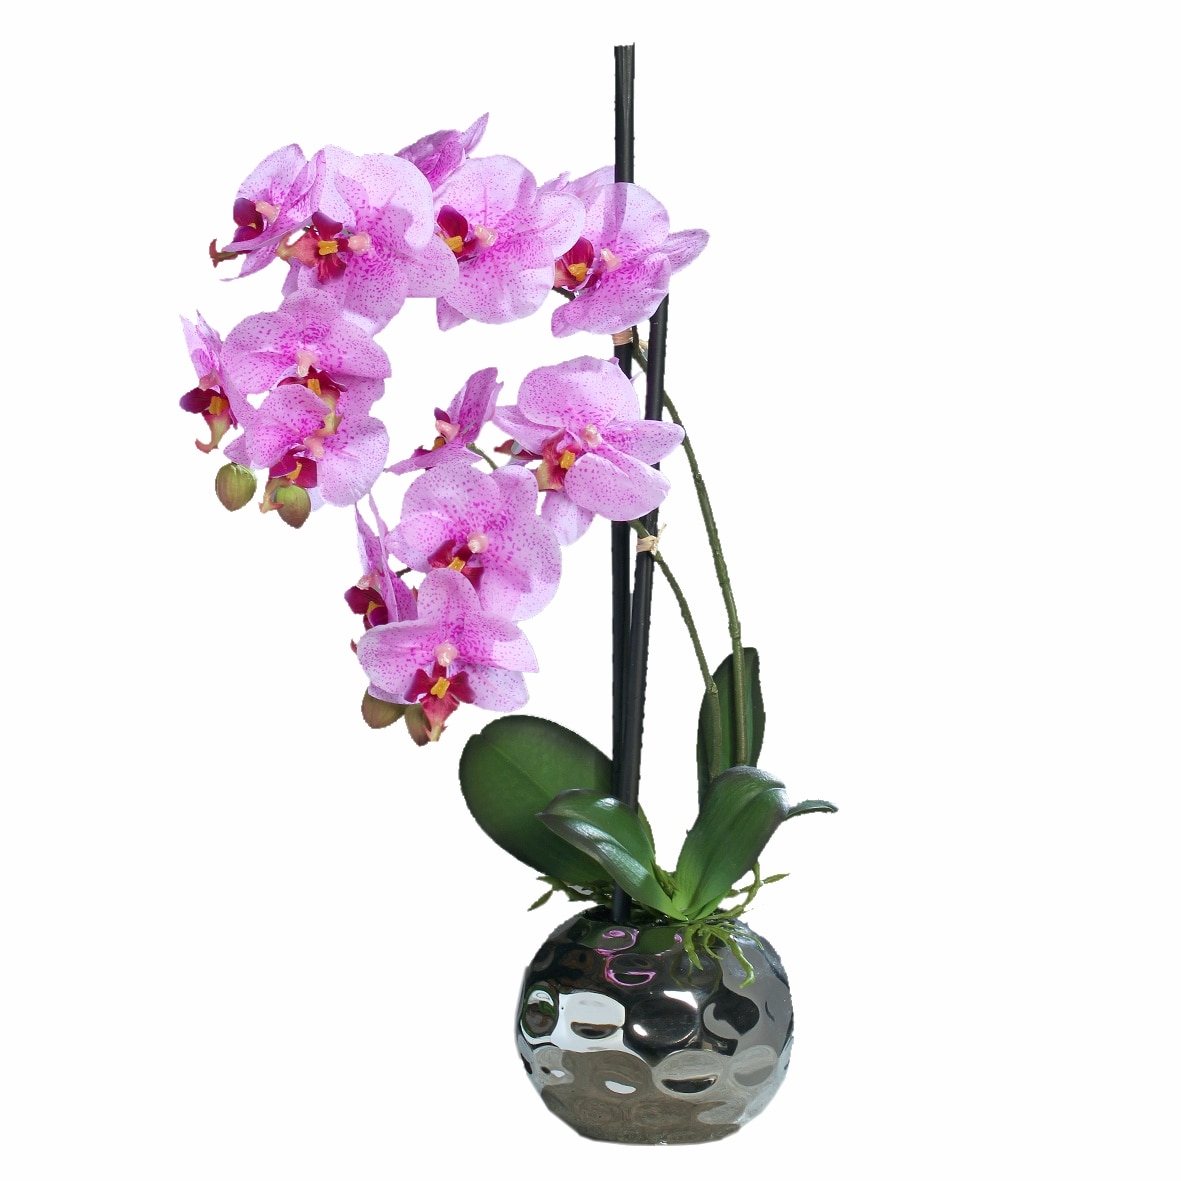 Орхидея в горшке купить в интернет. Орхидея в горшке. Орхидея розовая в горшке. Орхидея искусственная в керамическом горшке. Орхидея в горшке с розовыми цветами.